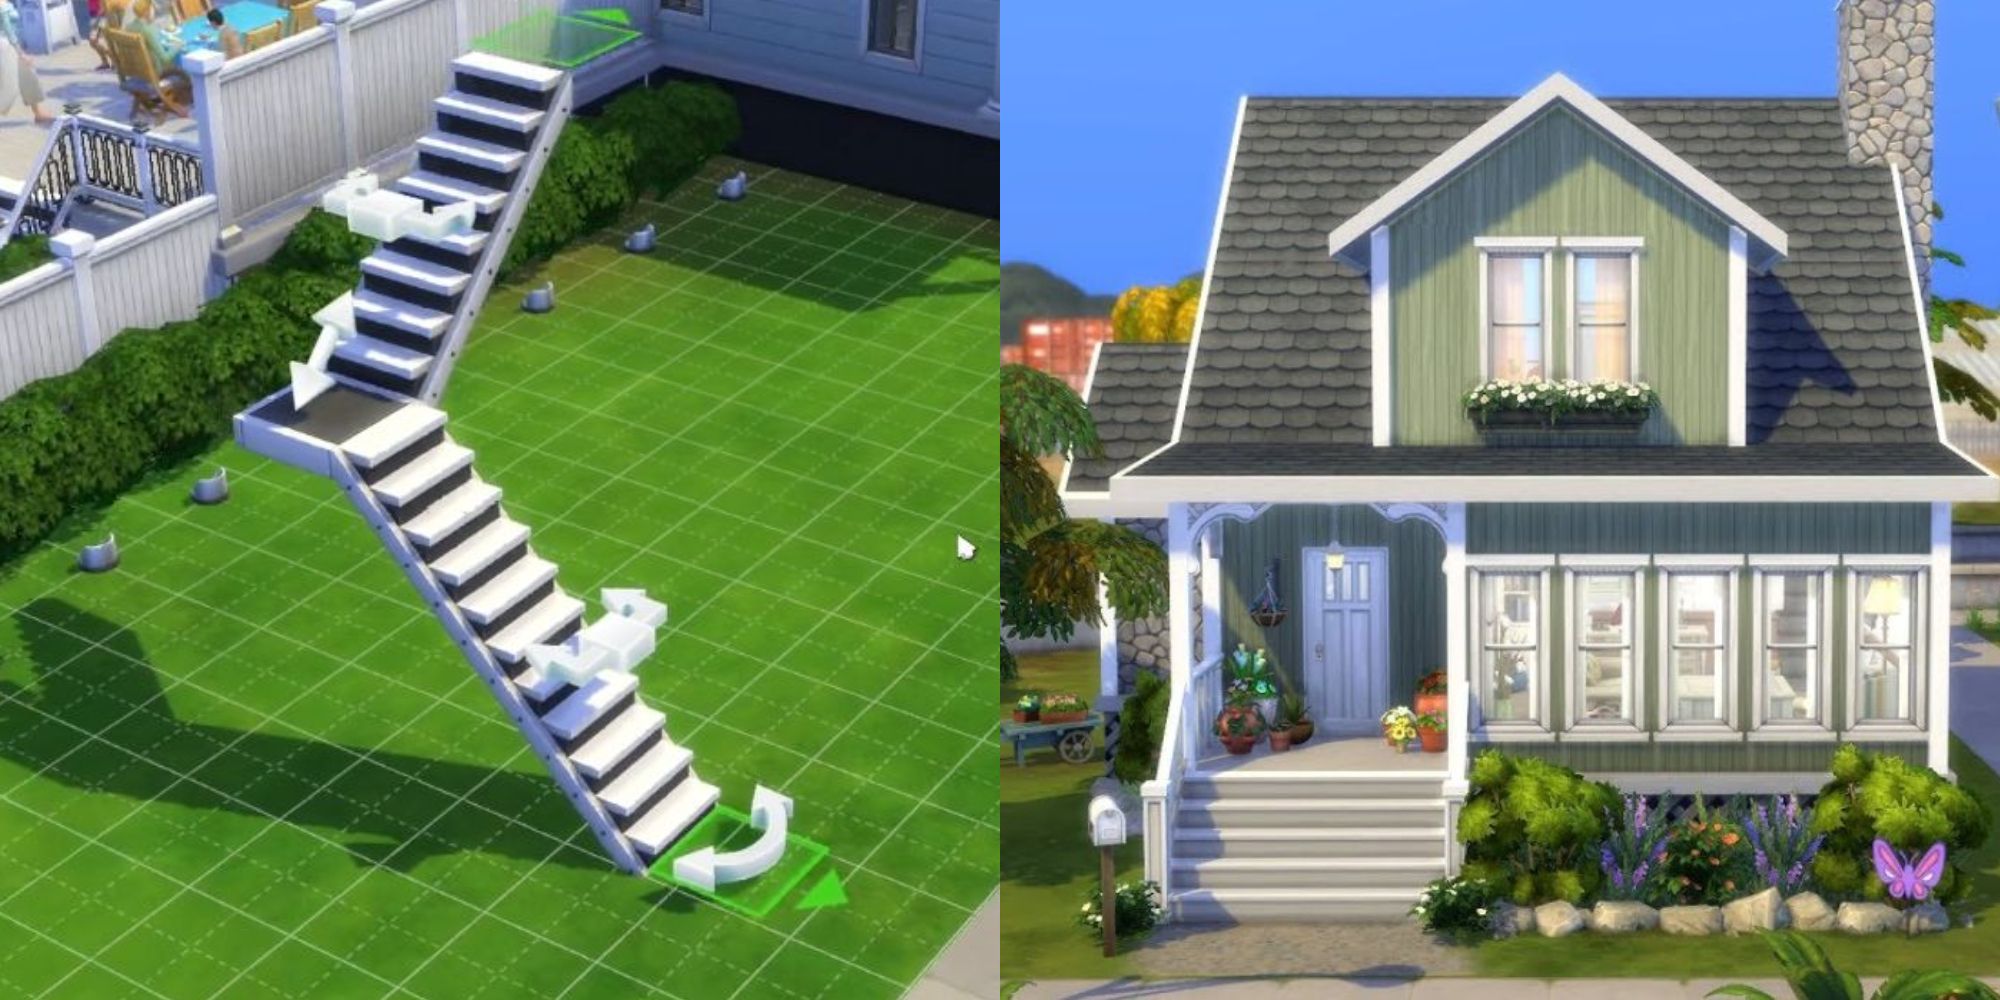 Dica de Construção - Mais Opções de Edição do Telhado - The Sims 4 #th